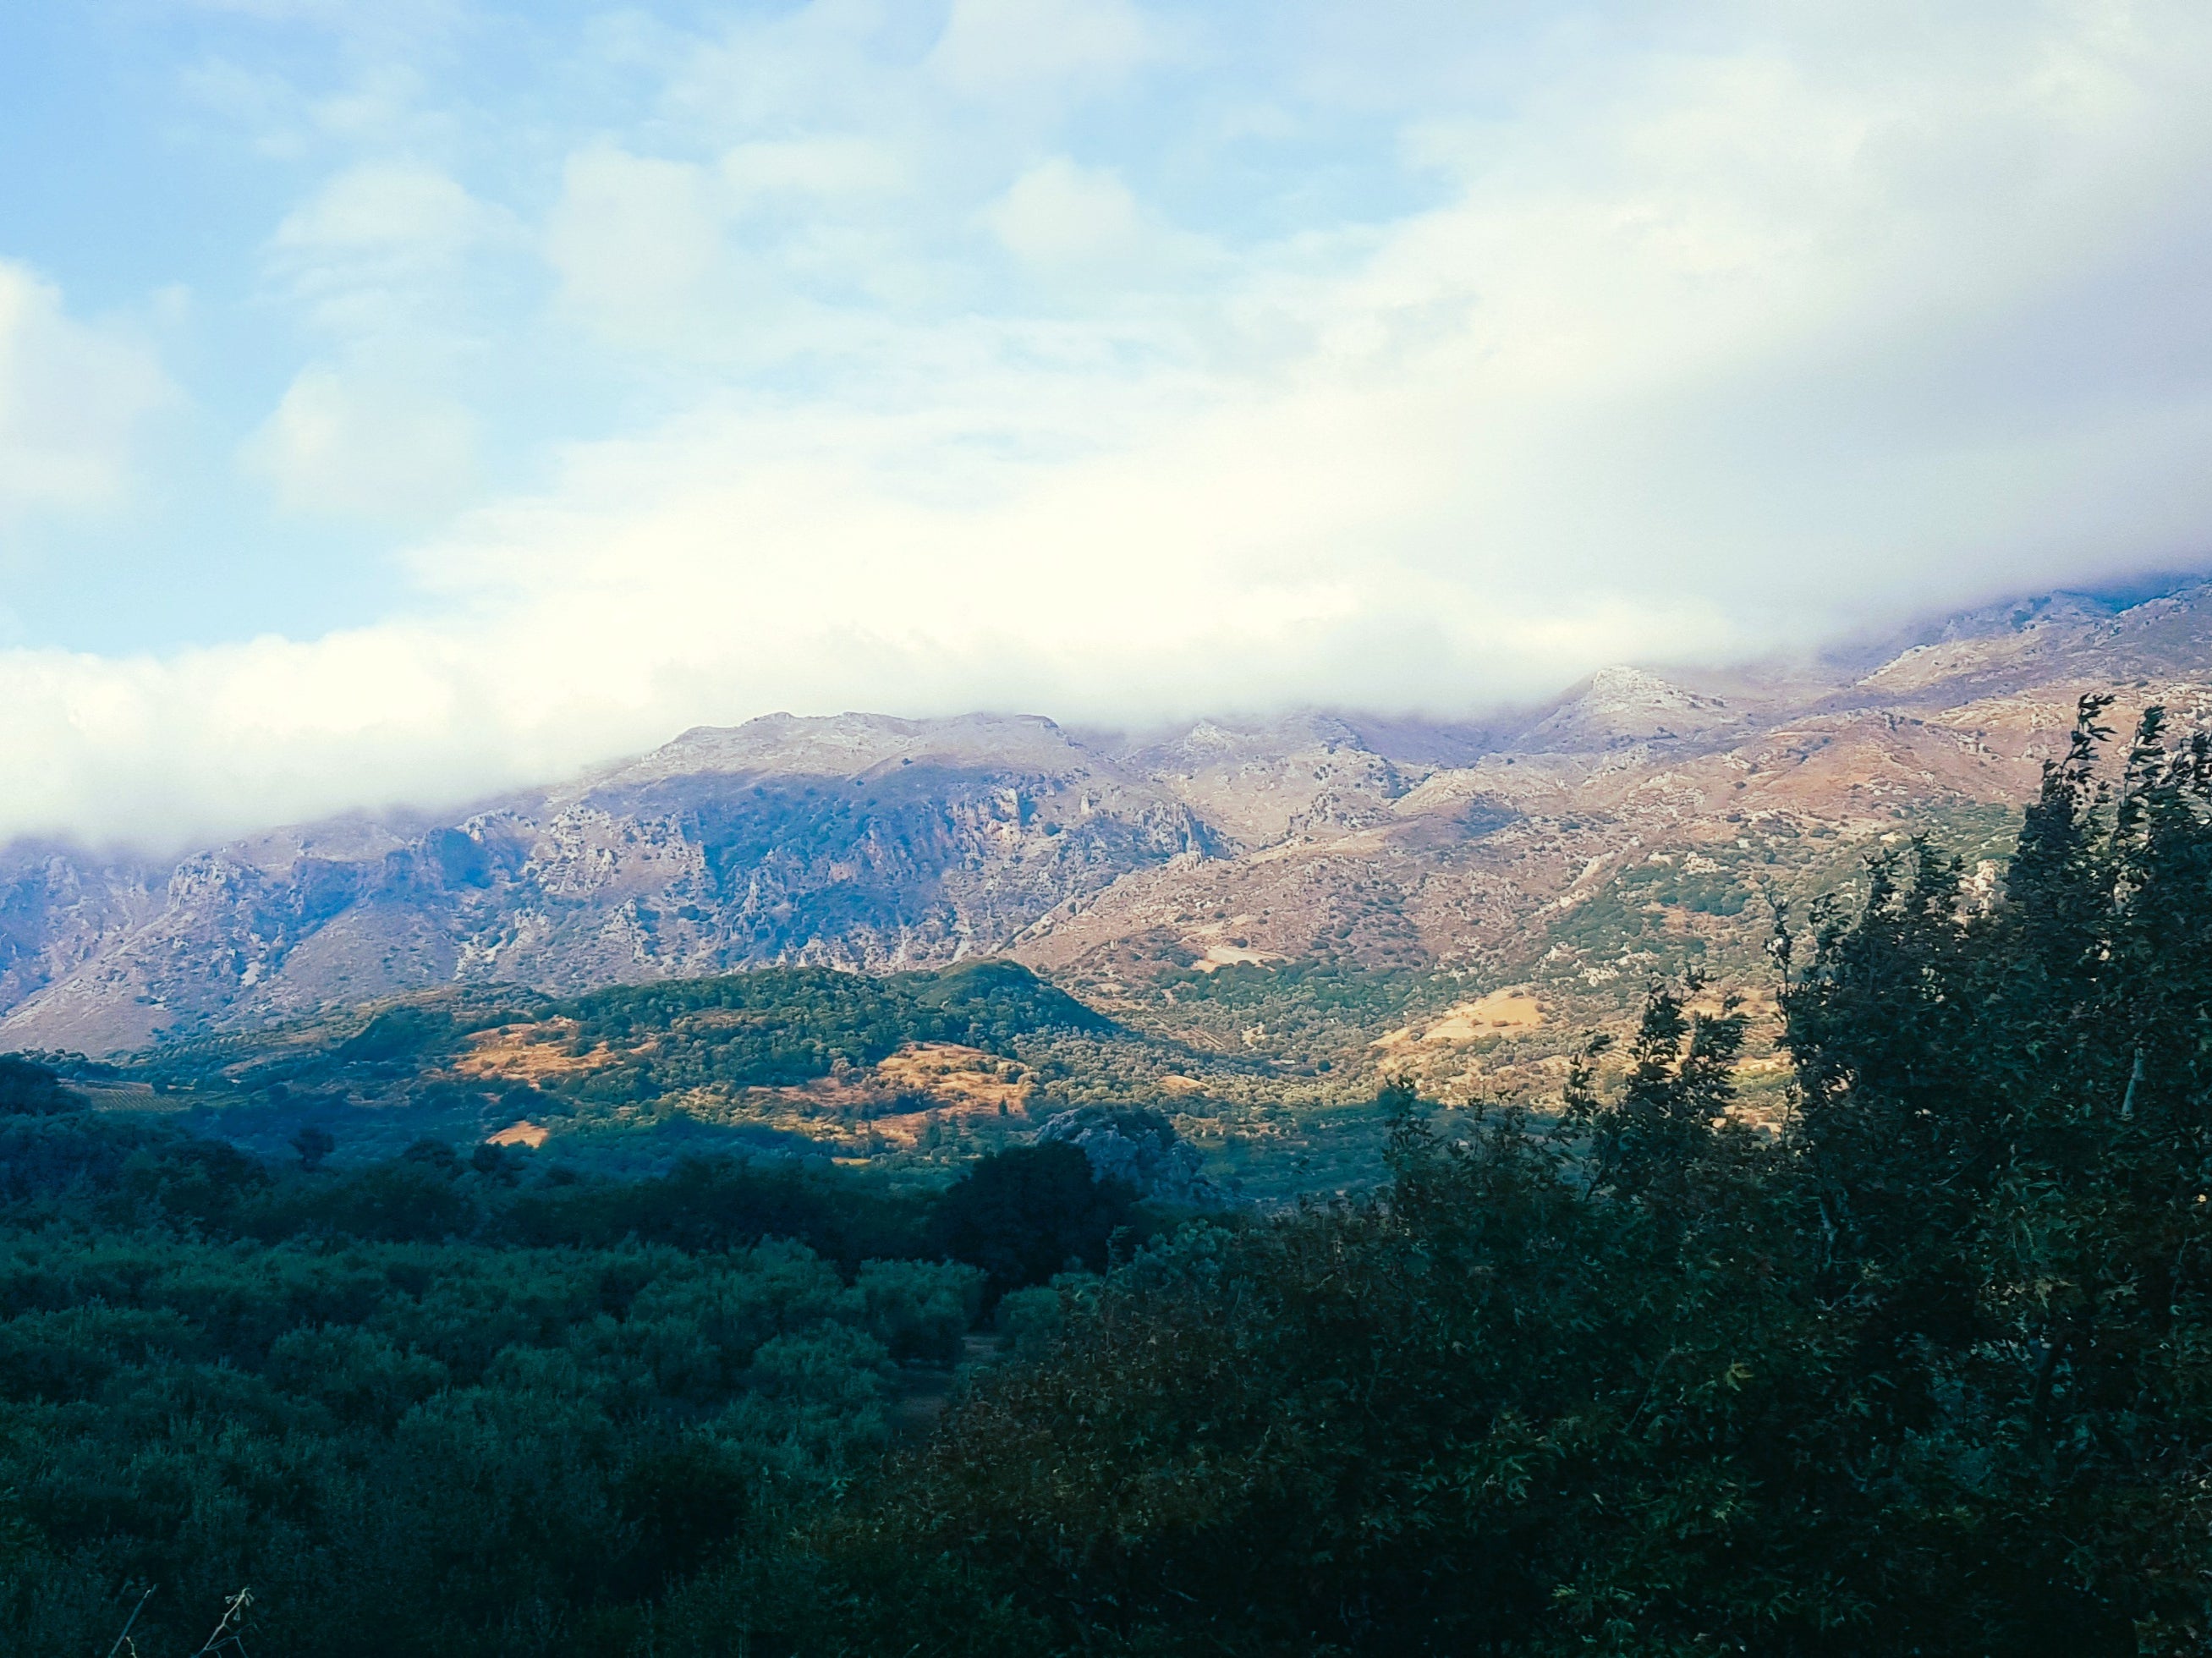 View across the Amari Valley, Crete